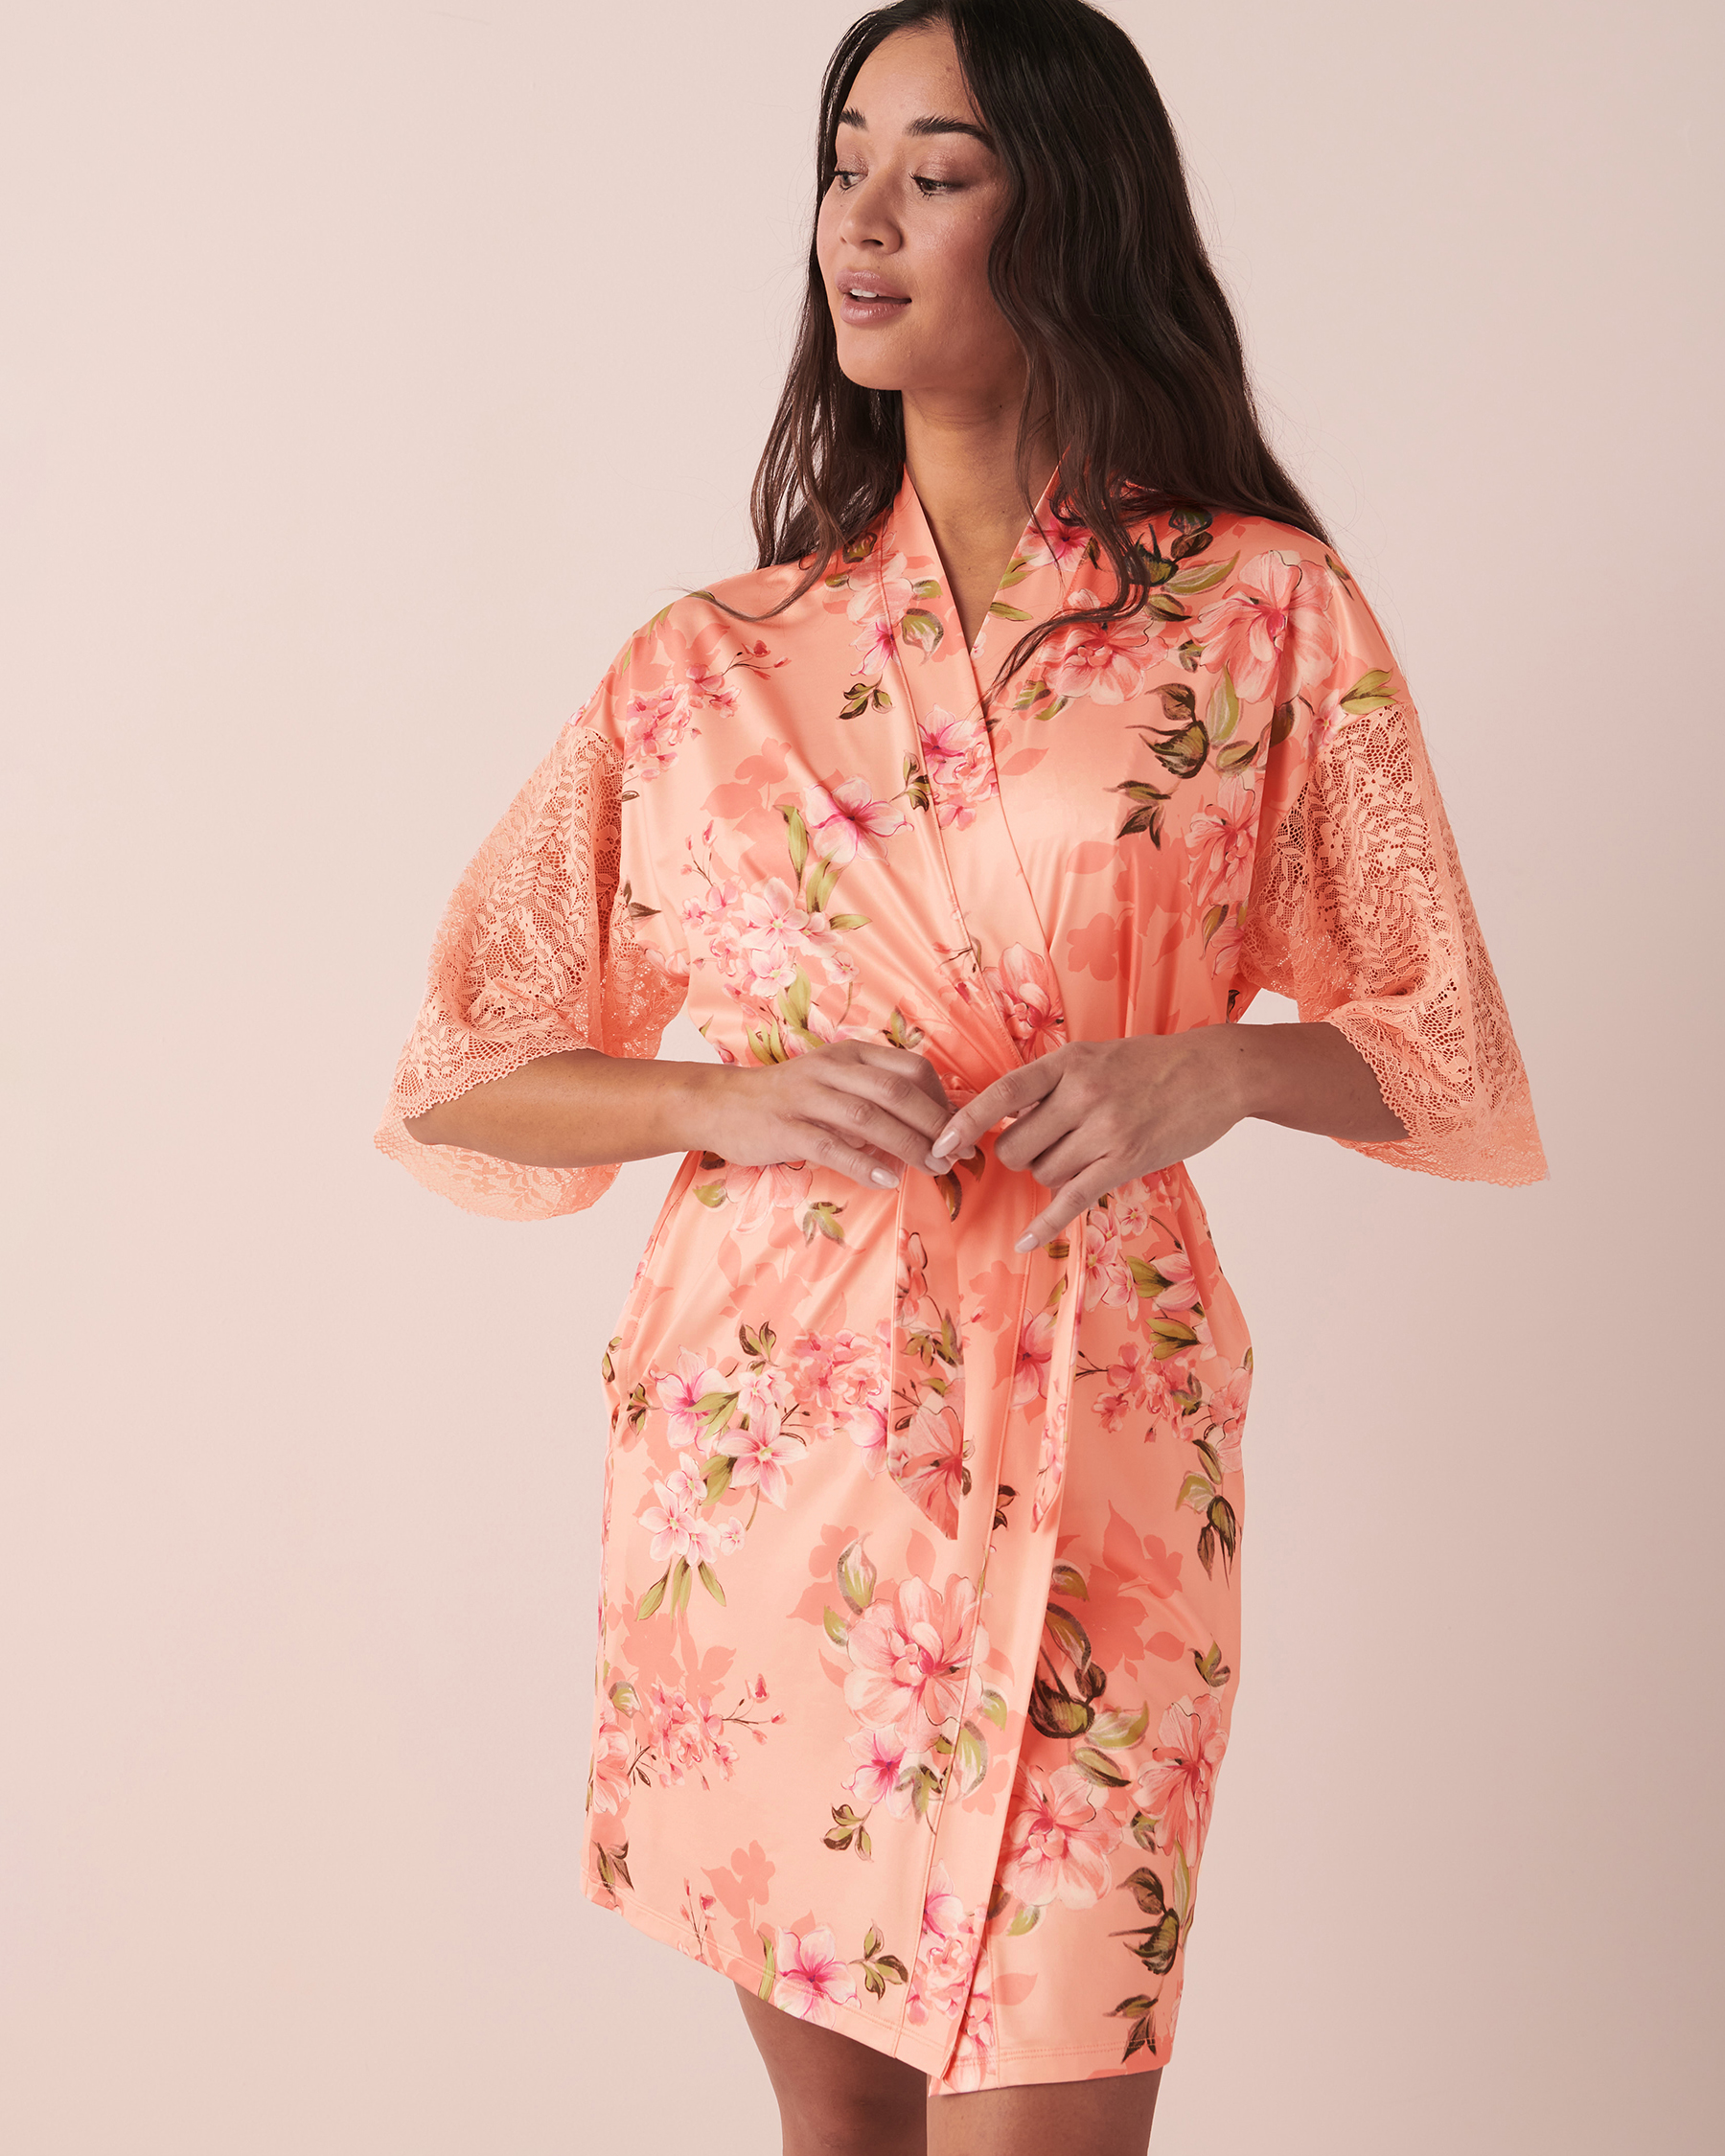 LA VIE EN ROSE Recycled Fibers Lace Trim Kimono Peachy floral 60600050 - View3